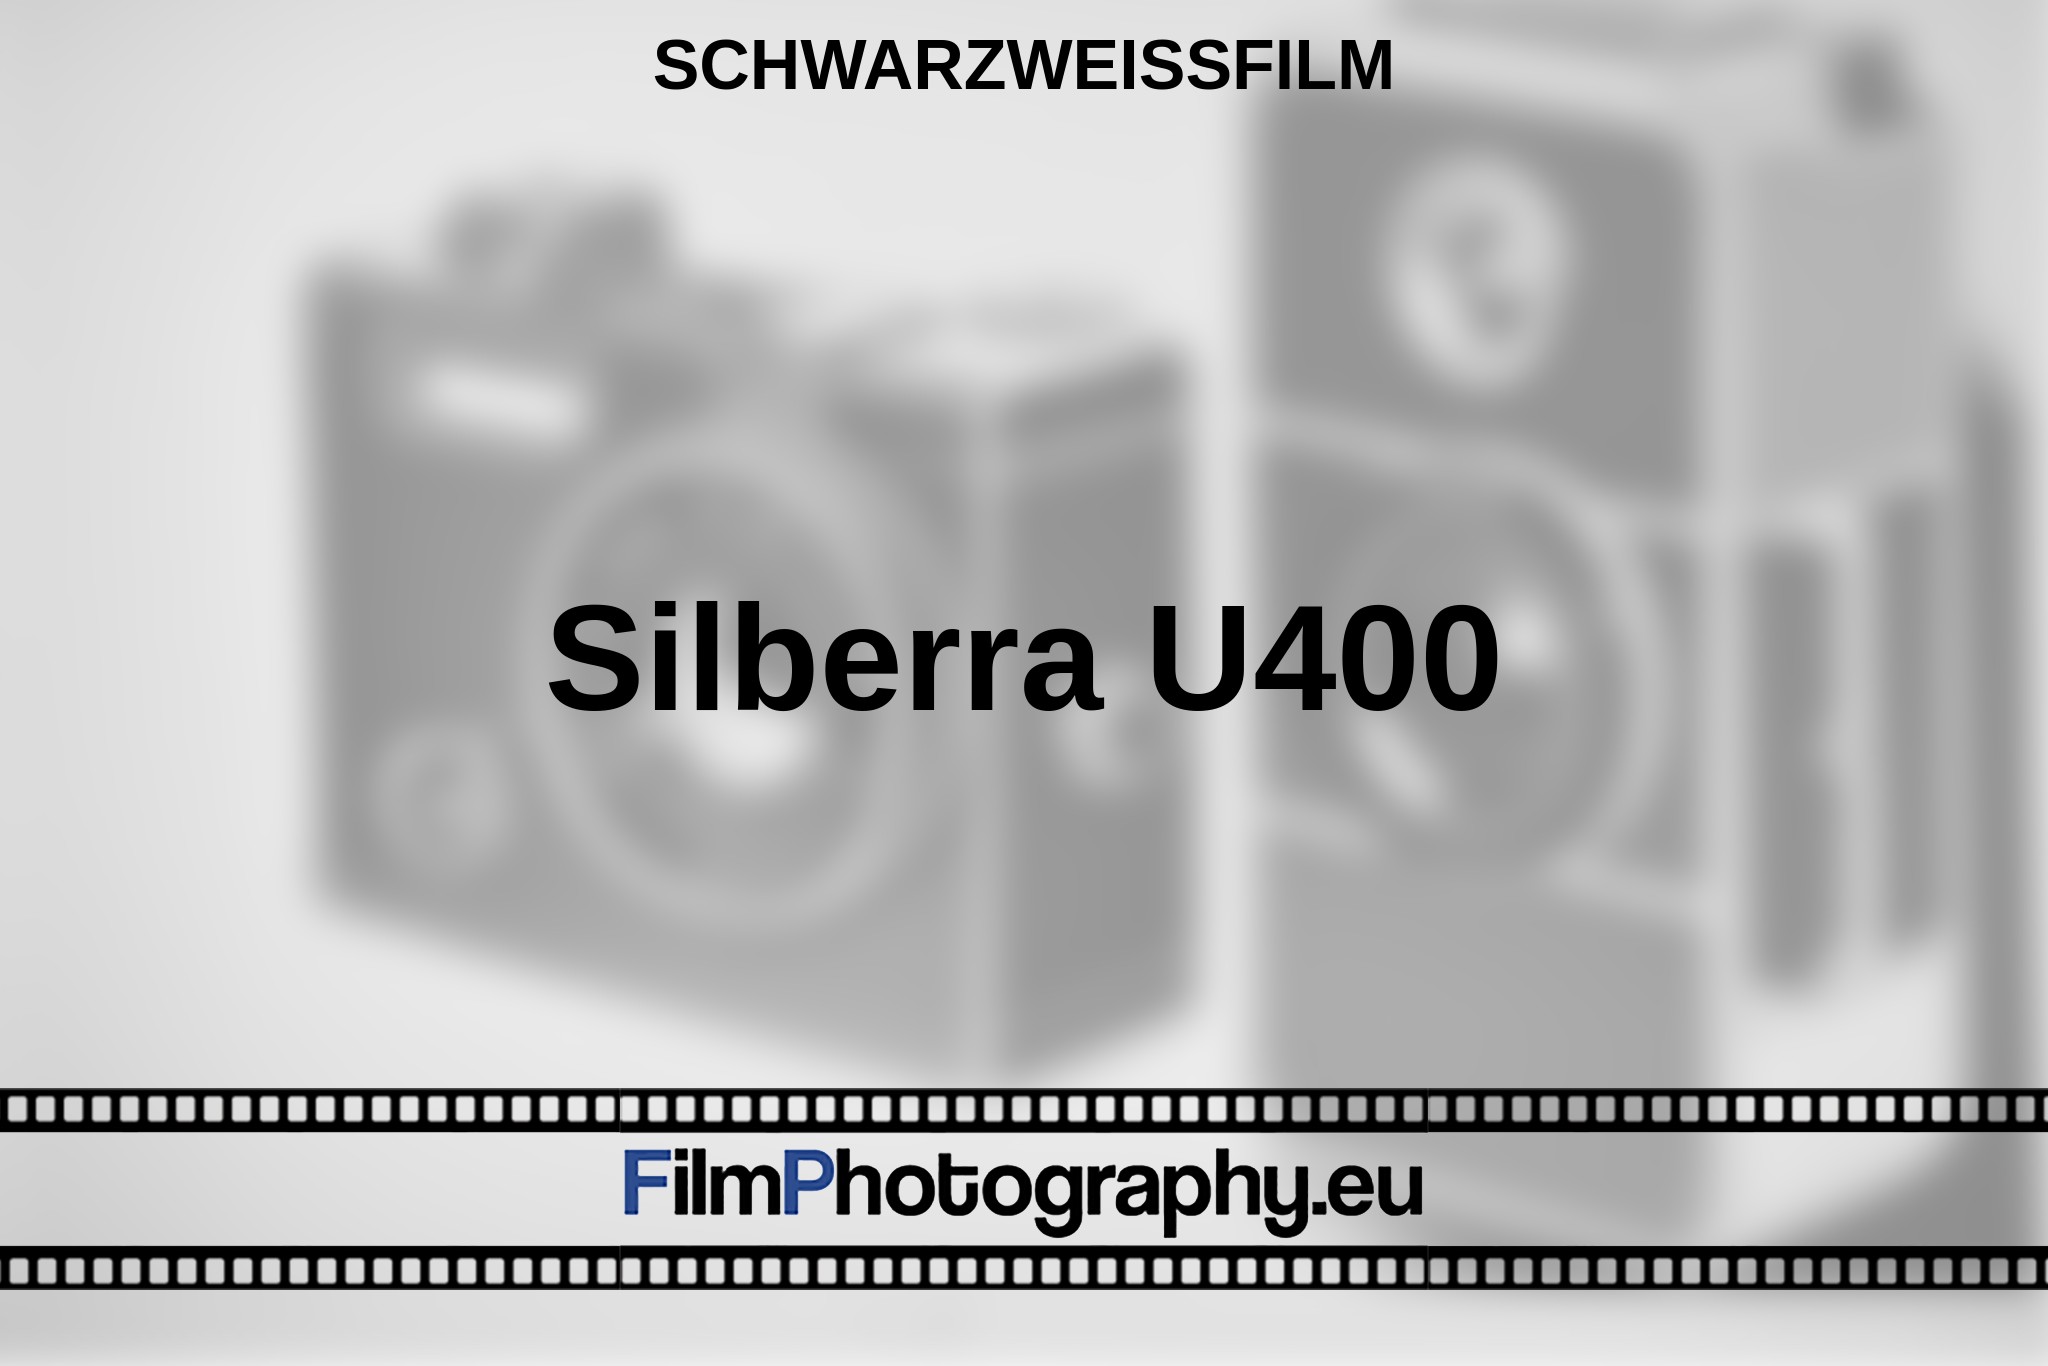 silberra-u400-schwarzweißfilm-bnv.jpg